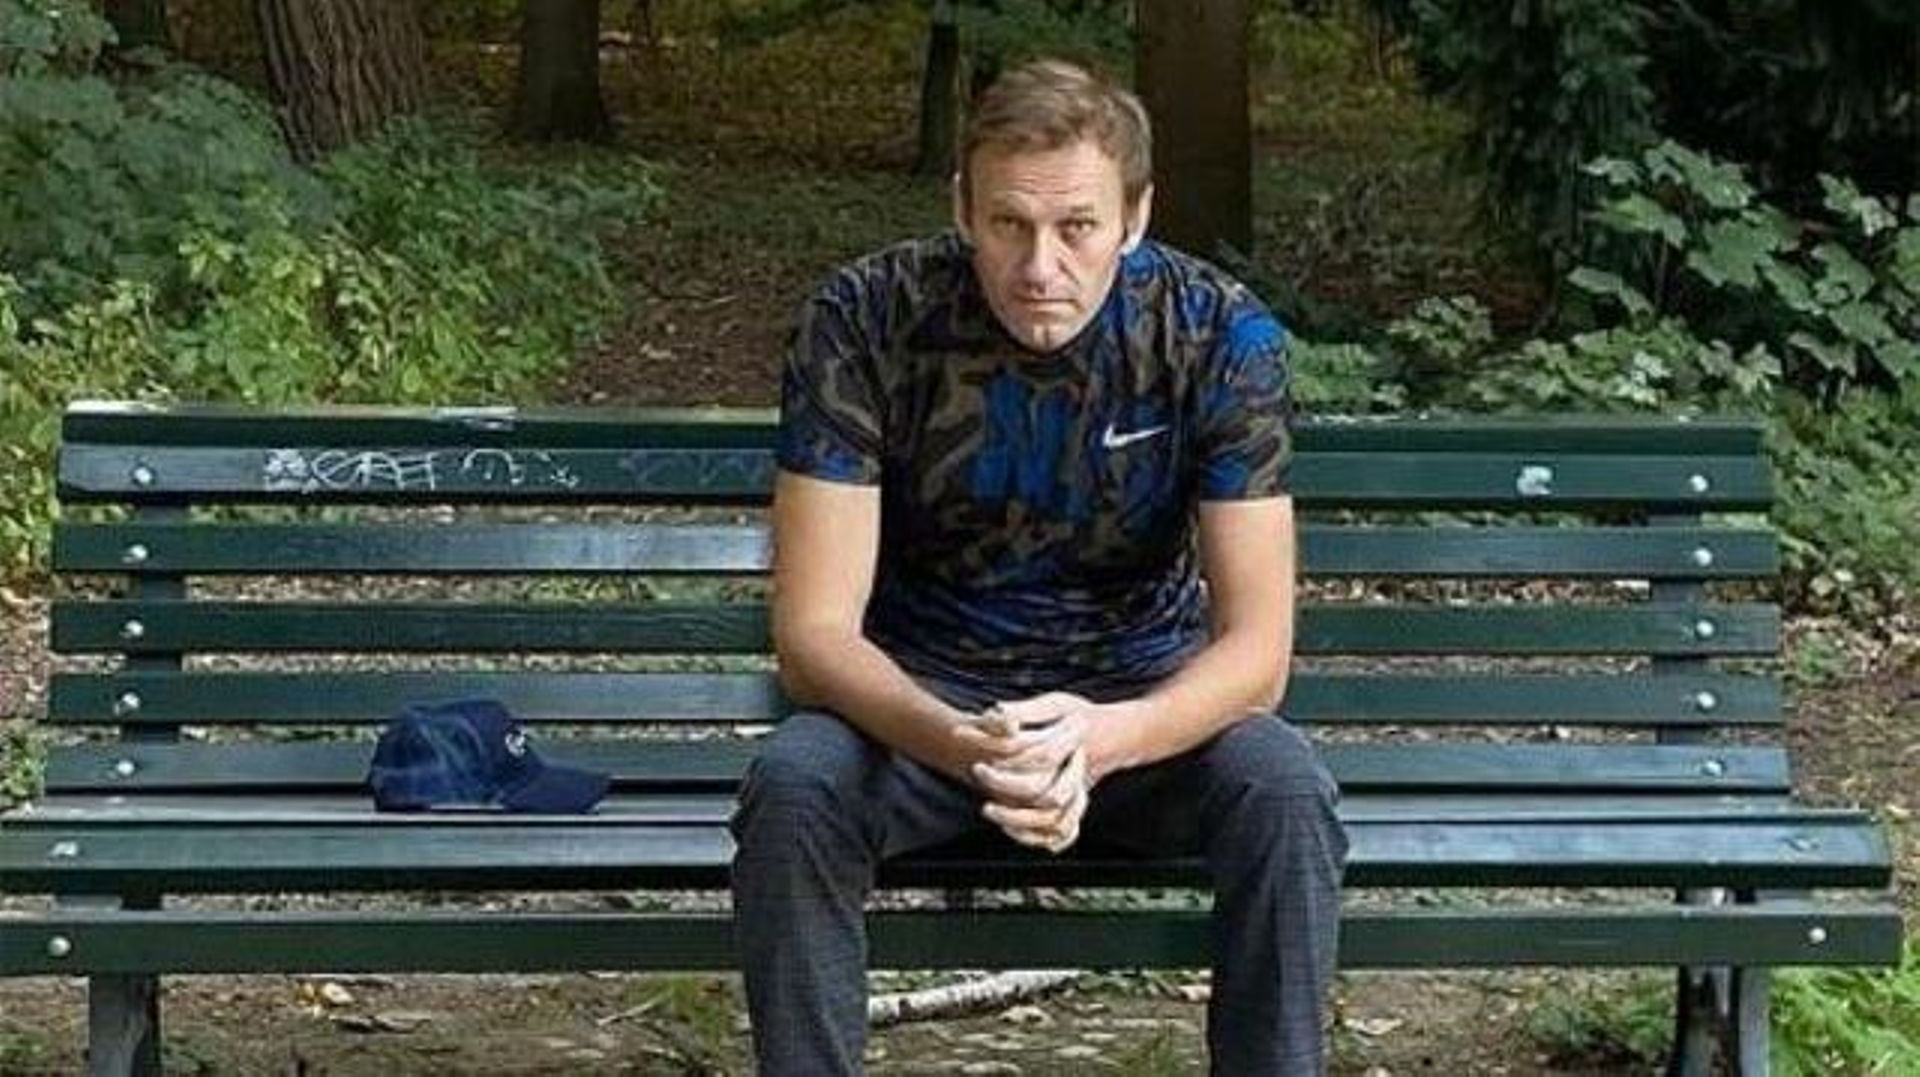 Empoisonnement de Navalny: Moscou accuse Berlin de "refuser catégoriquement" de coopérer